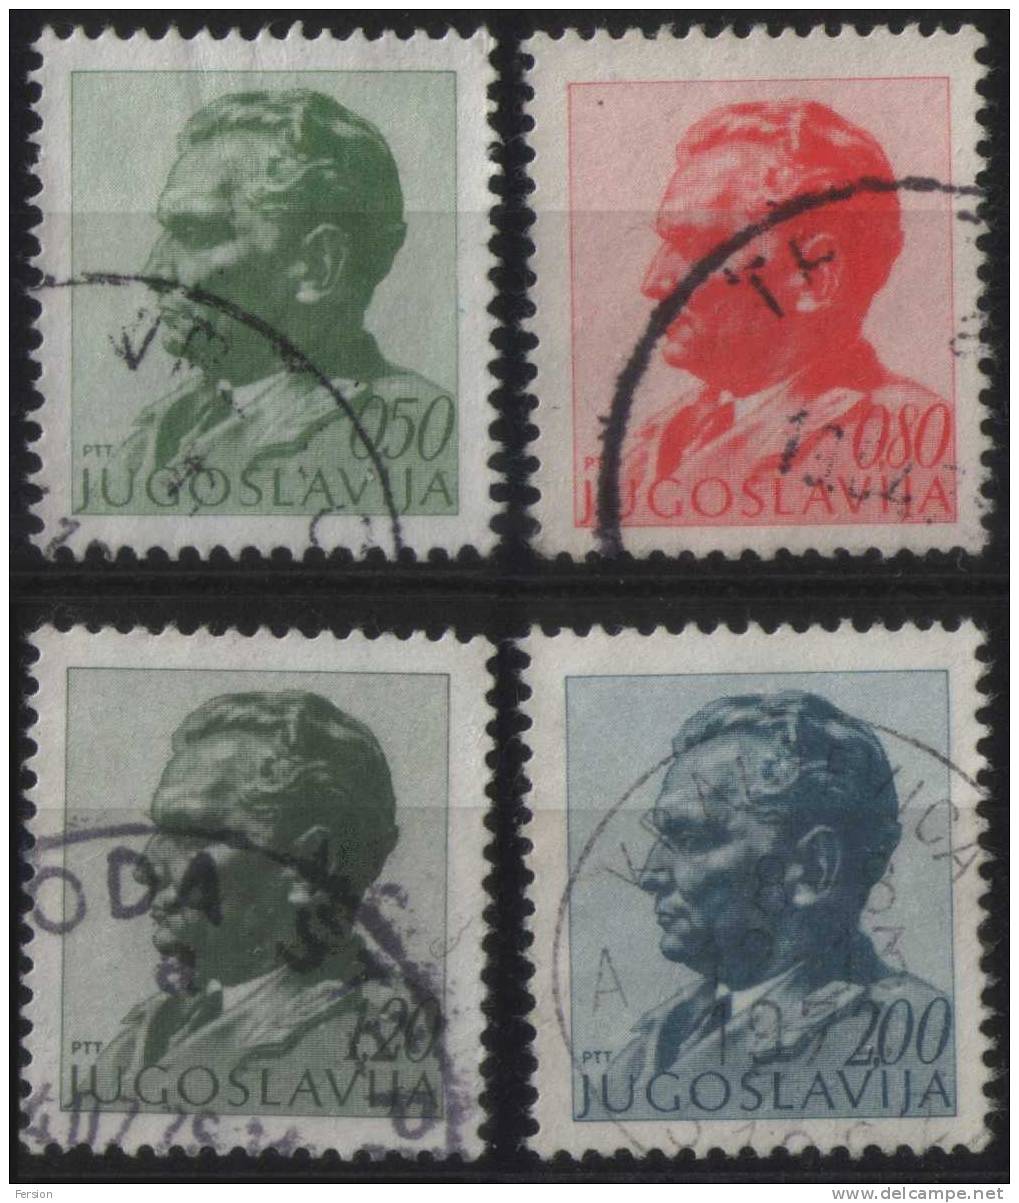 1974 - Yugoslavia - Definitive Stamps - TITO - Mi. 1551-1554 - Usati